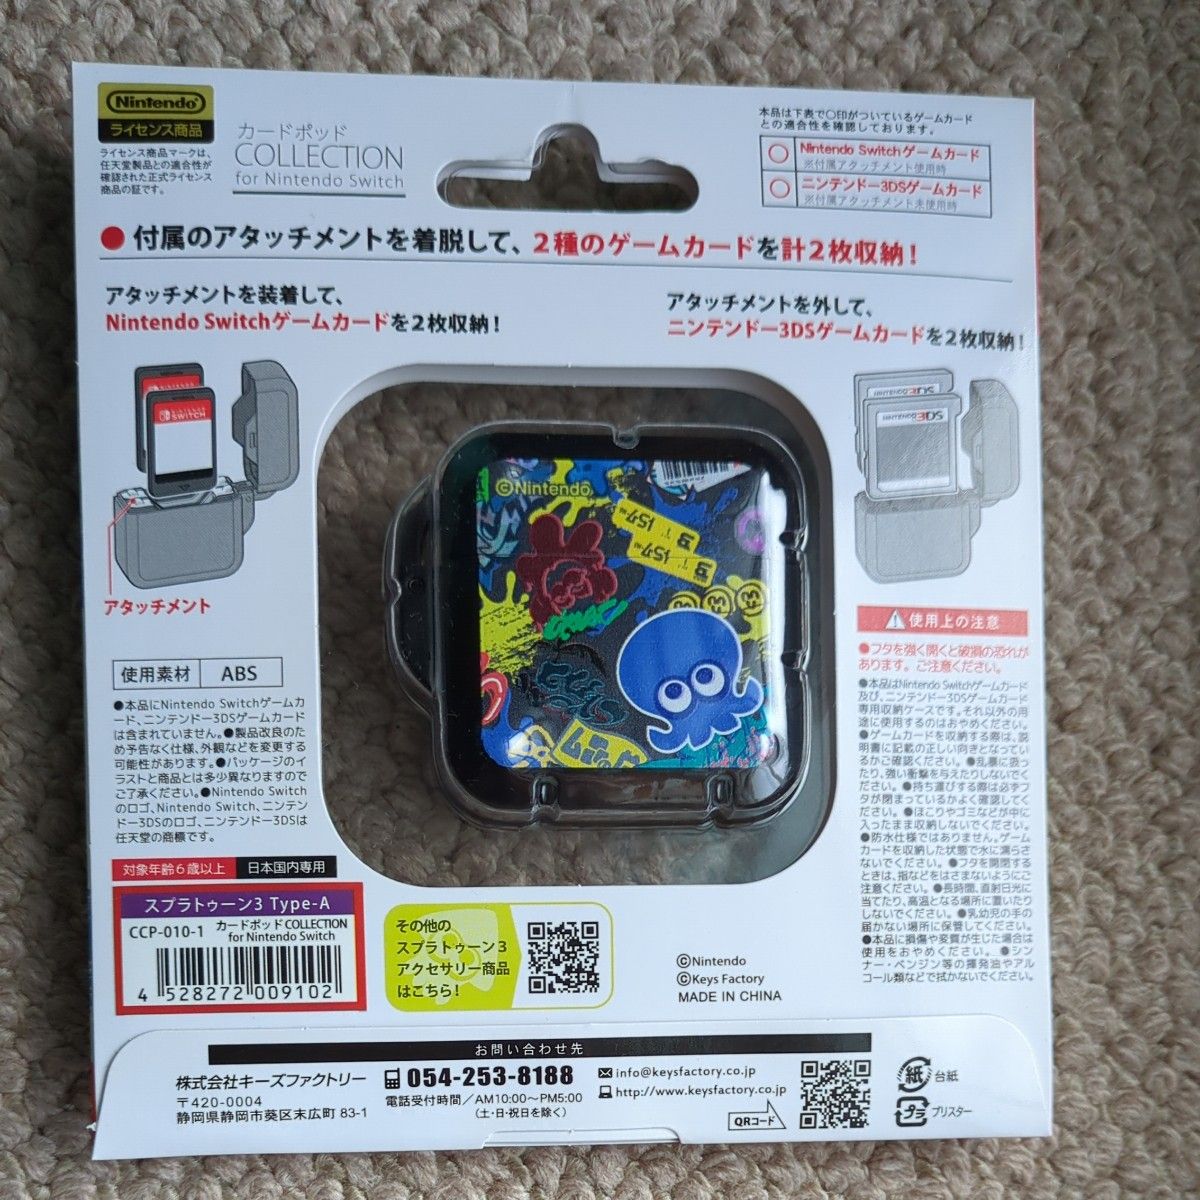 カードポッド COLLECTION for Nintendo Switch (スプラトゥーン3) Type-A キーズファクトリー